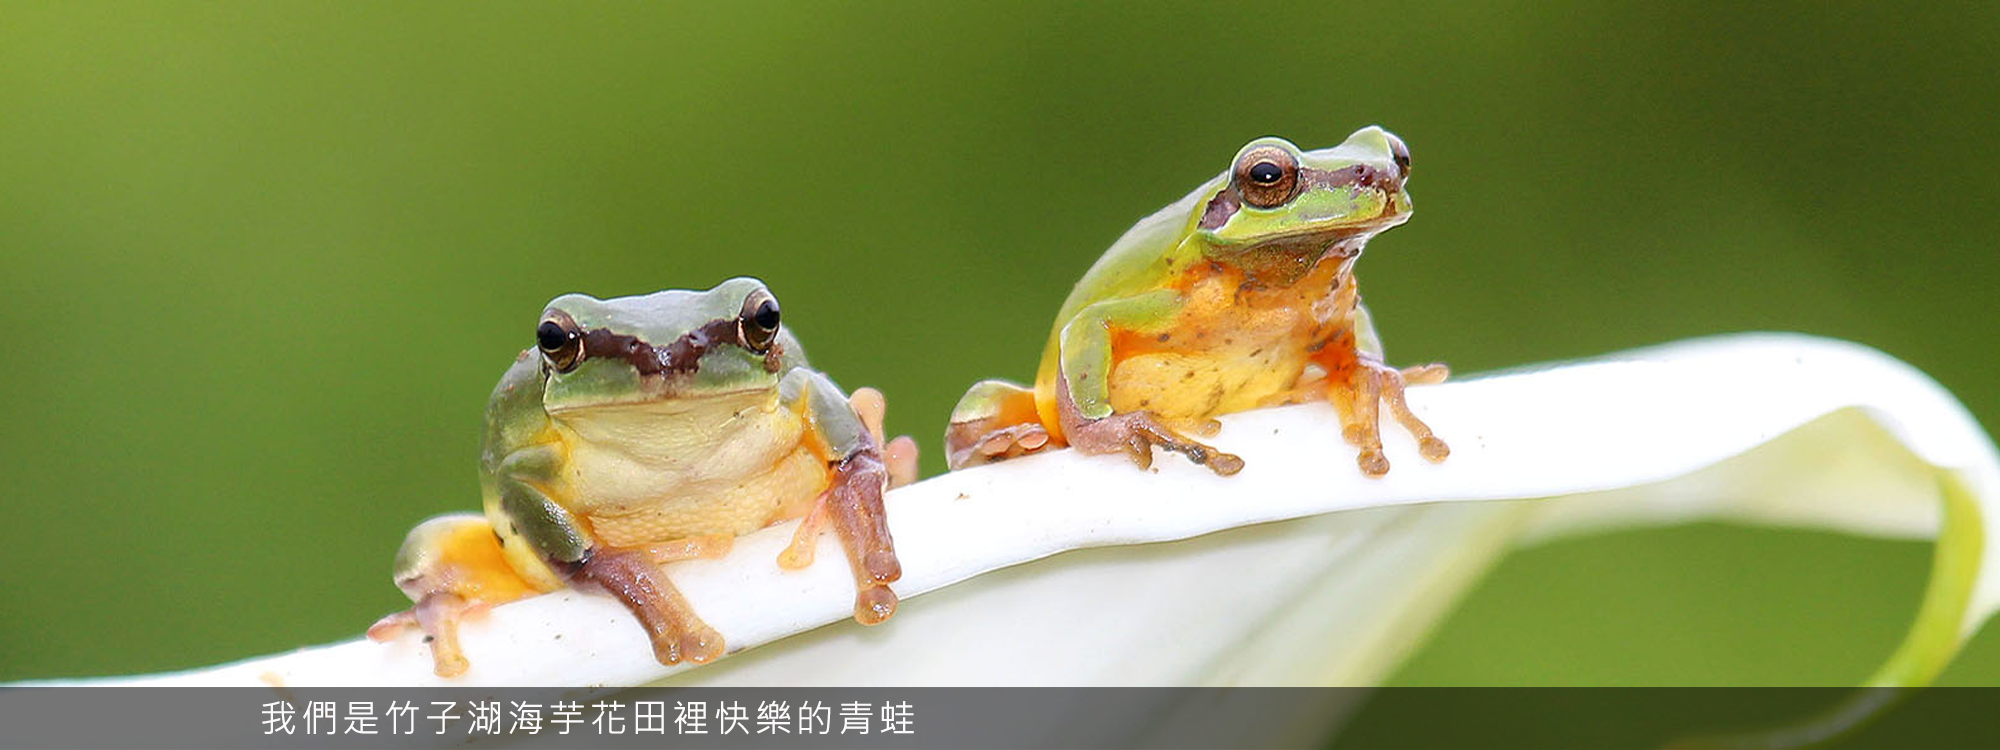 我們是竹子湖海芋花田裡快樂的青蛙